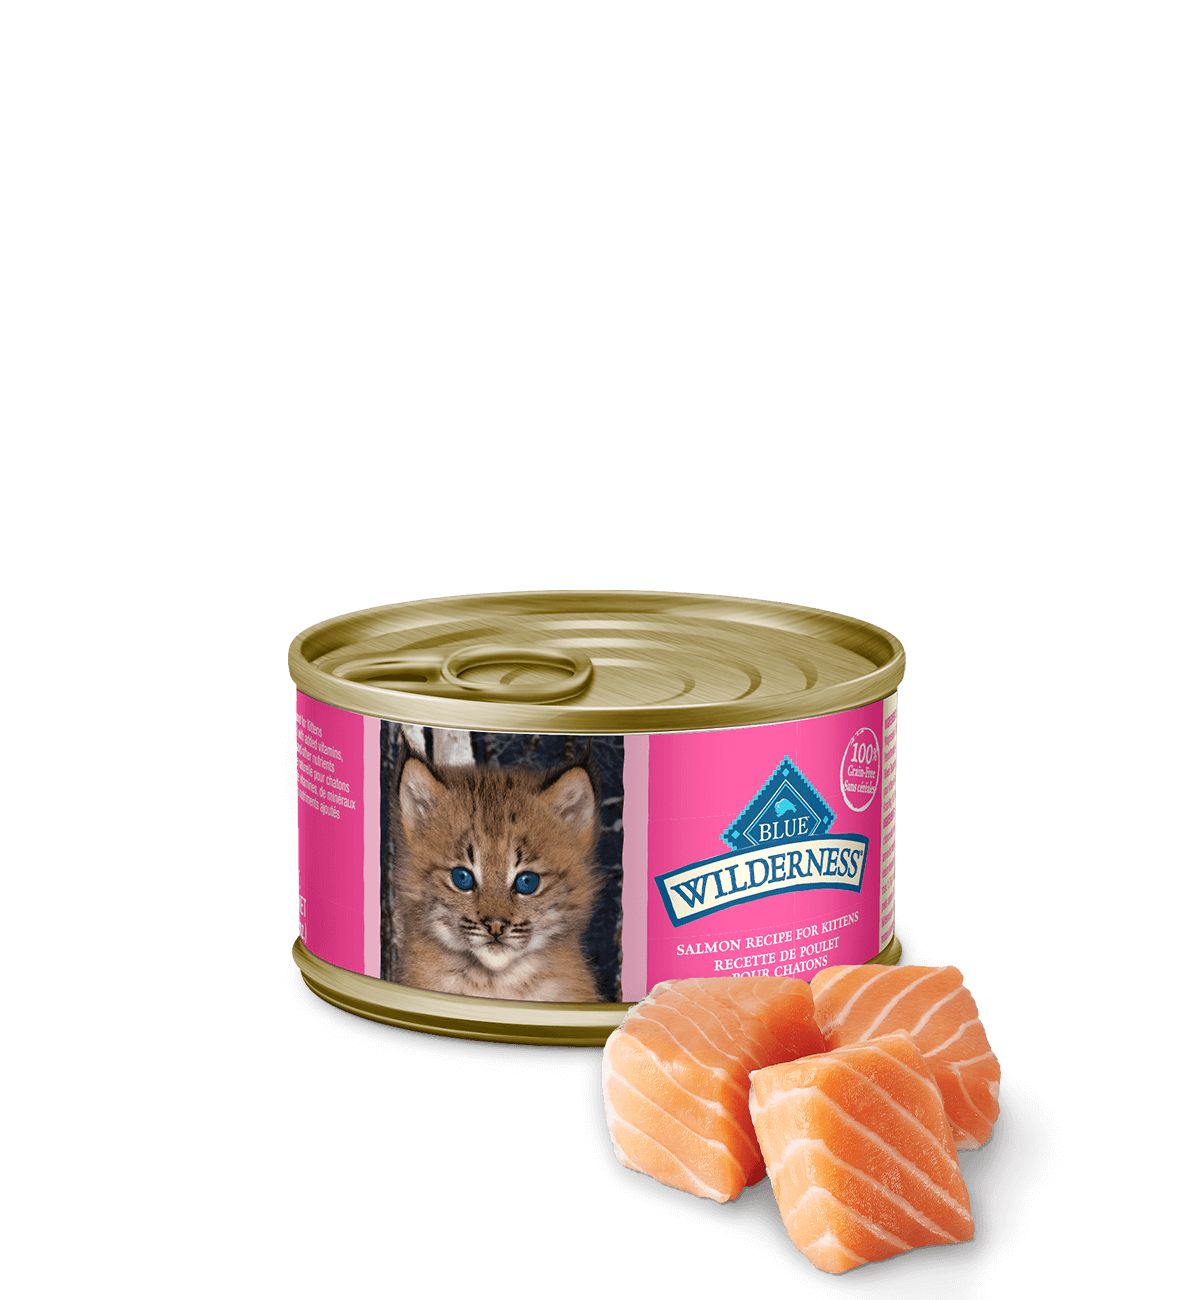 Canada Wild salmon kitten wet cat food